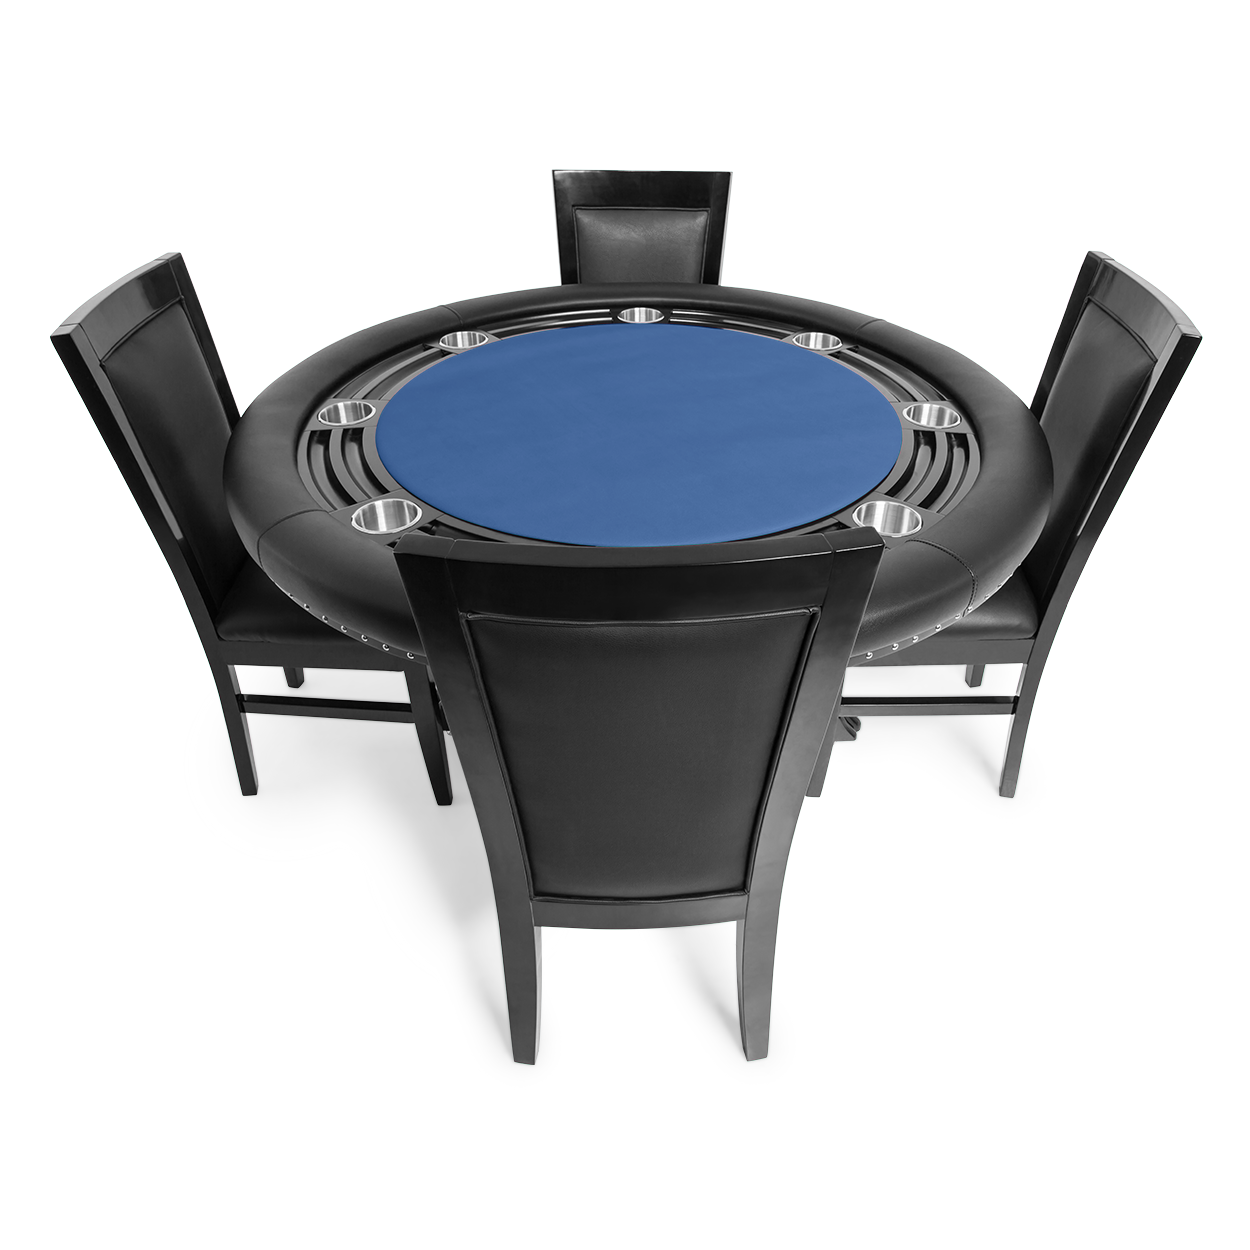 BBO The Nighthawk Poker Table Black Leg Velveteen Blue And BBO Chair